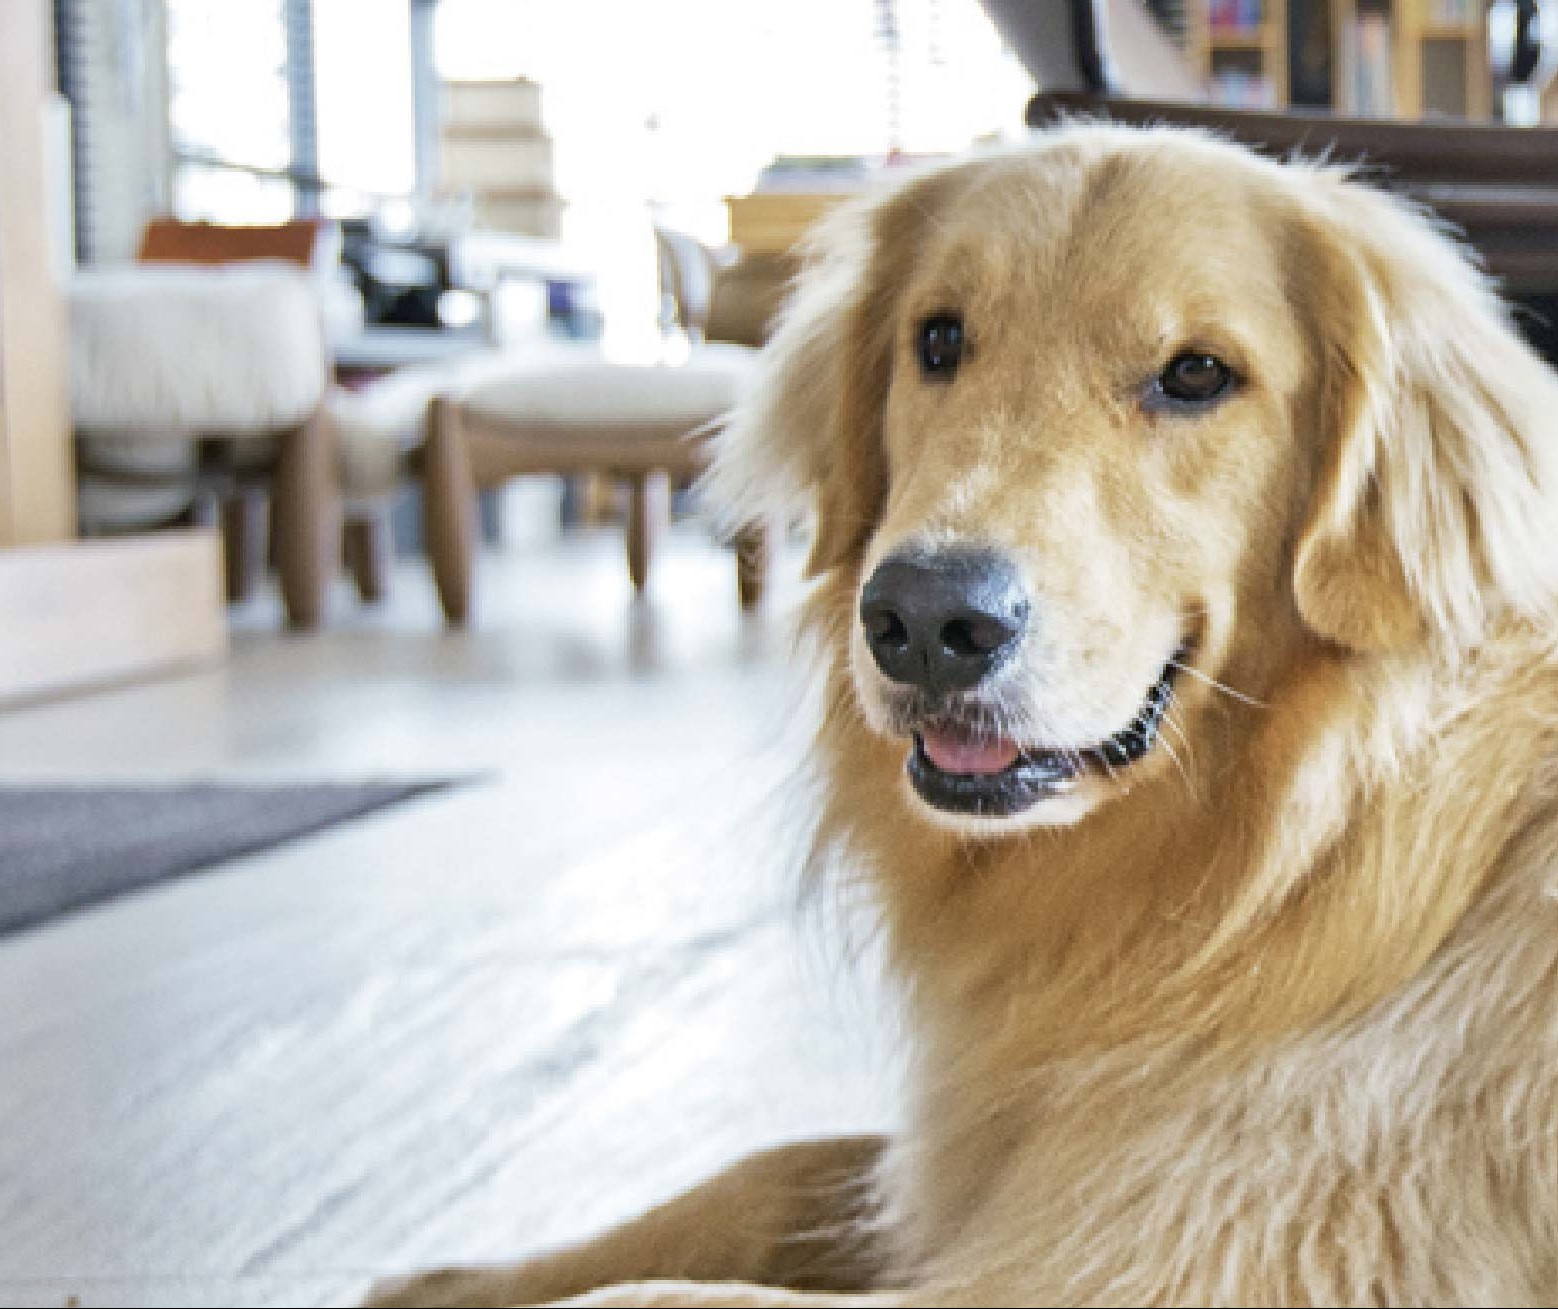 É possível ter um cão de grande porte em apartamento?